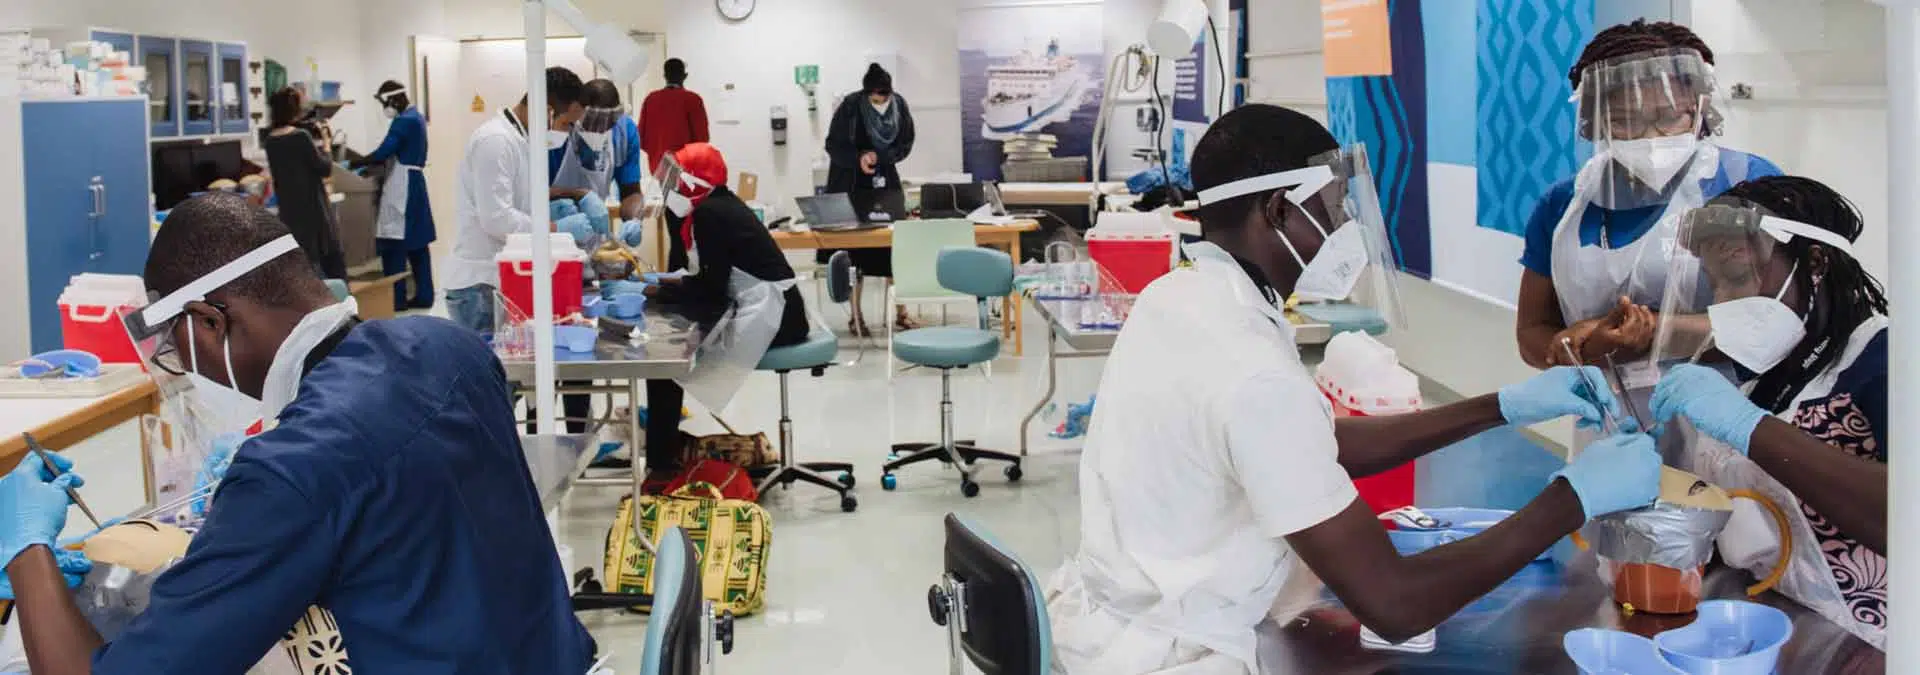 Notre ONG en Afrique : l’avenir d’une chirurgie propre et fiable